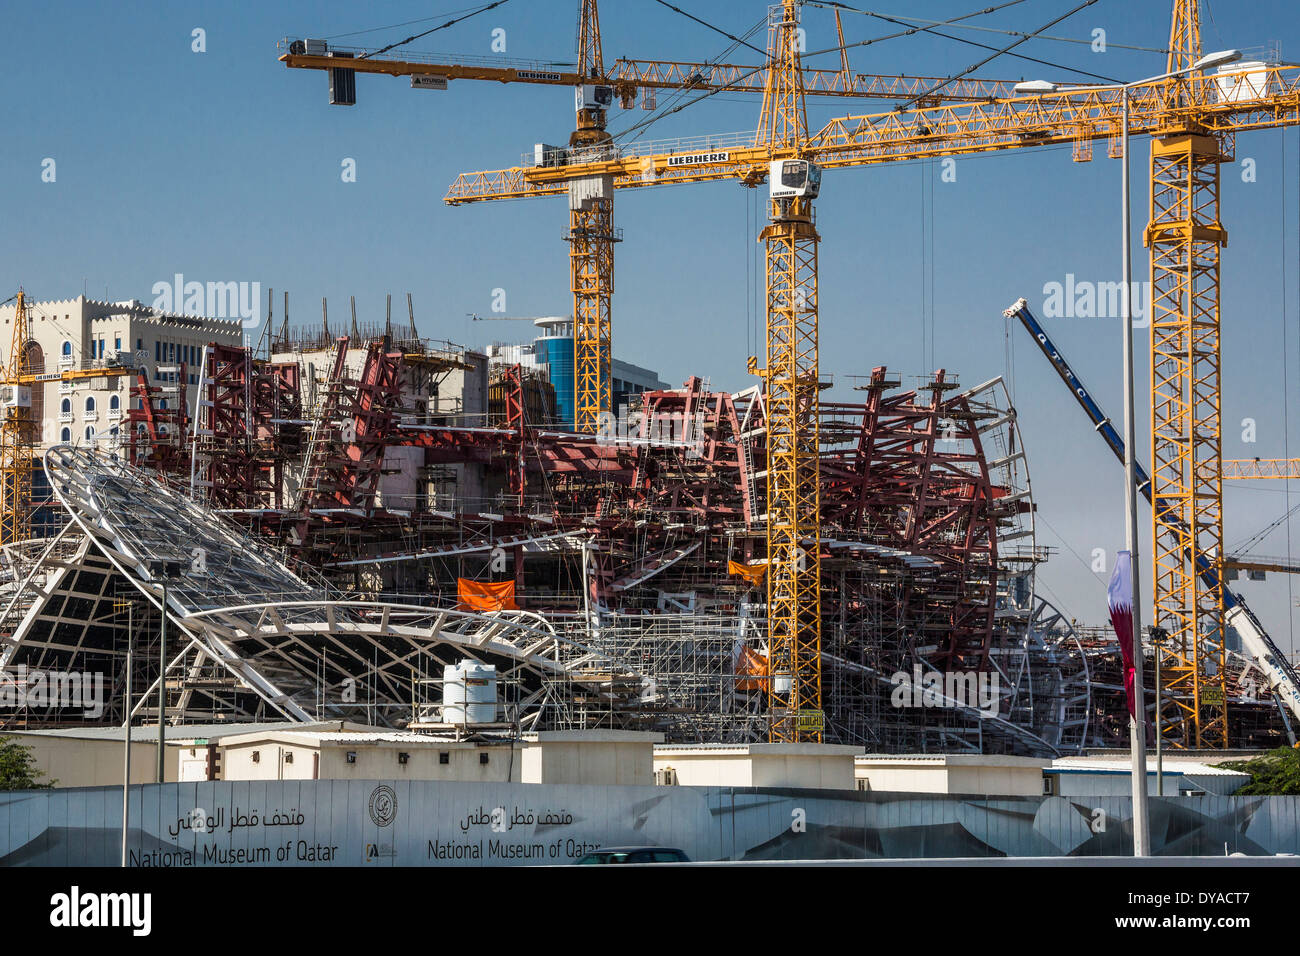 La construction du Musée de Doha Qatar Moyen-orient ville architecture futuriste de nouvelles grues national Musée national de travail de l'acier de construction Banque D'Images